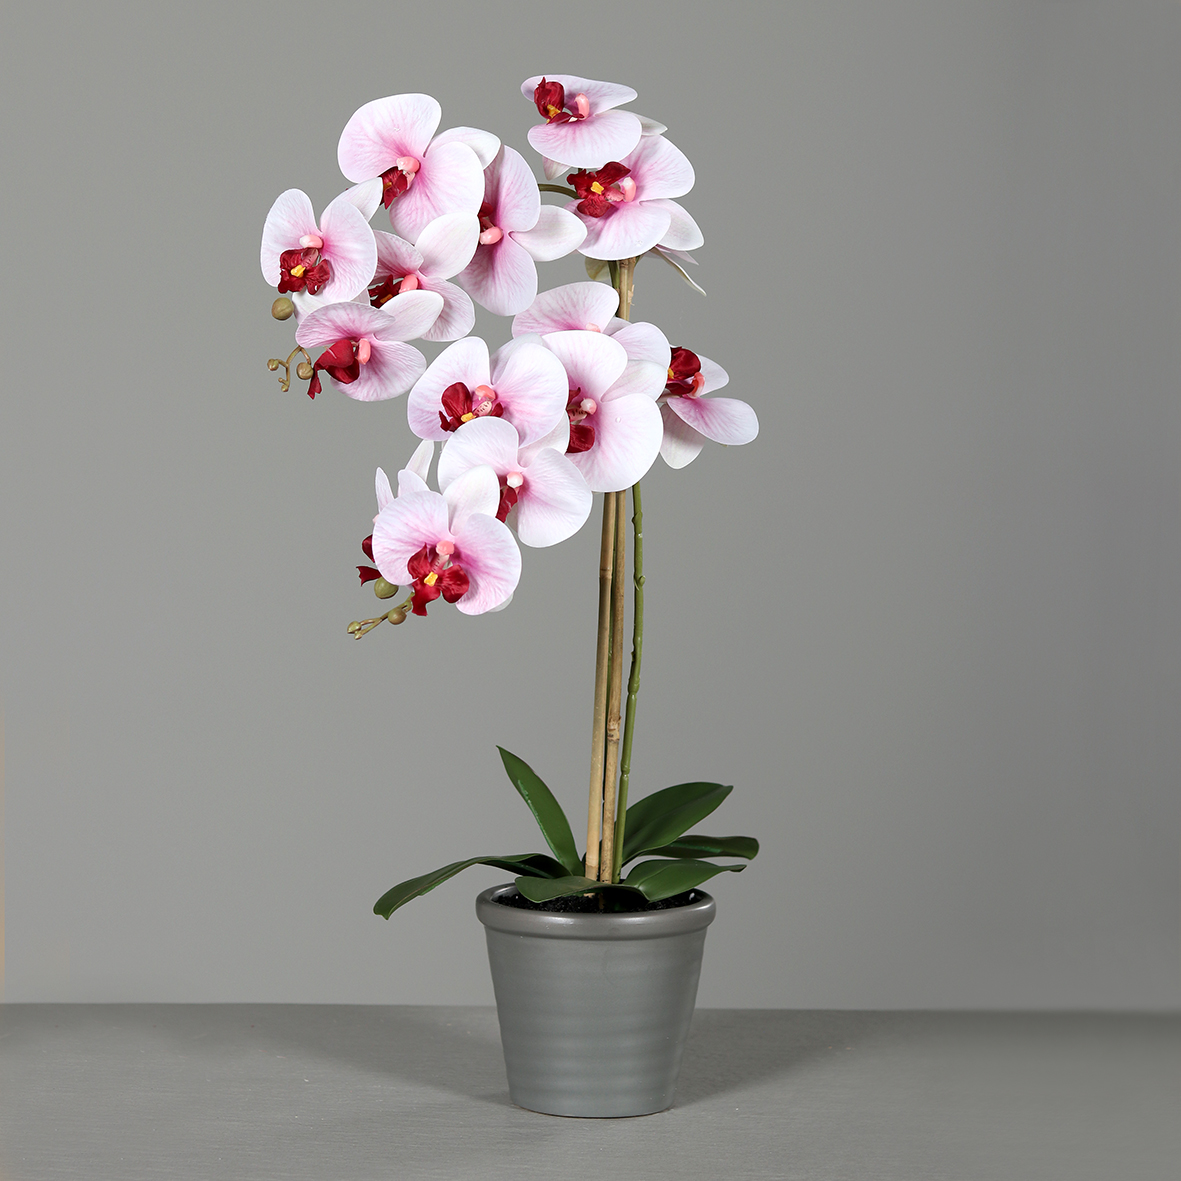 Orchidee 60x32cm weiß-rosa-pink im grauen Keramiktopf DP künstliche Blumen Kunstpflanzen Kunstblume